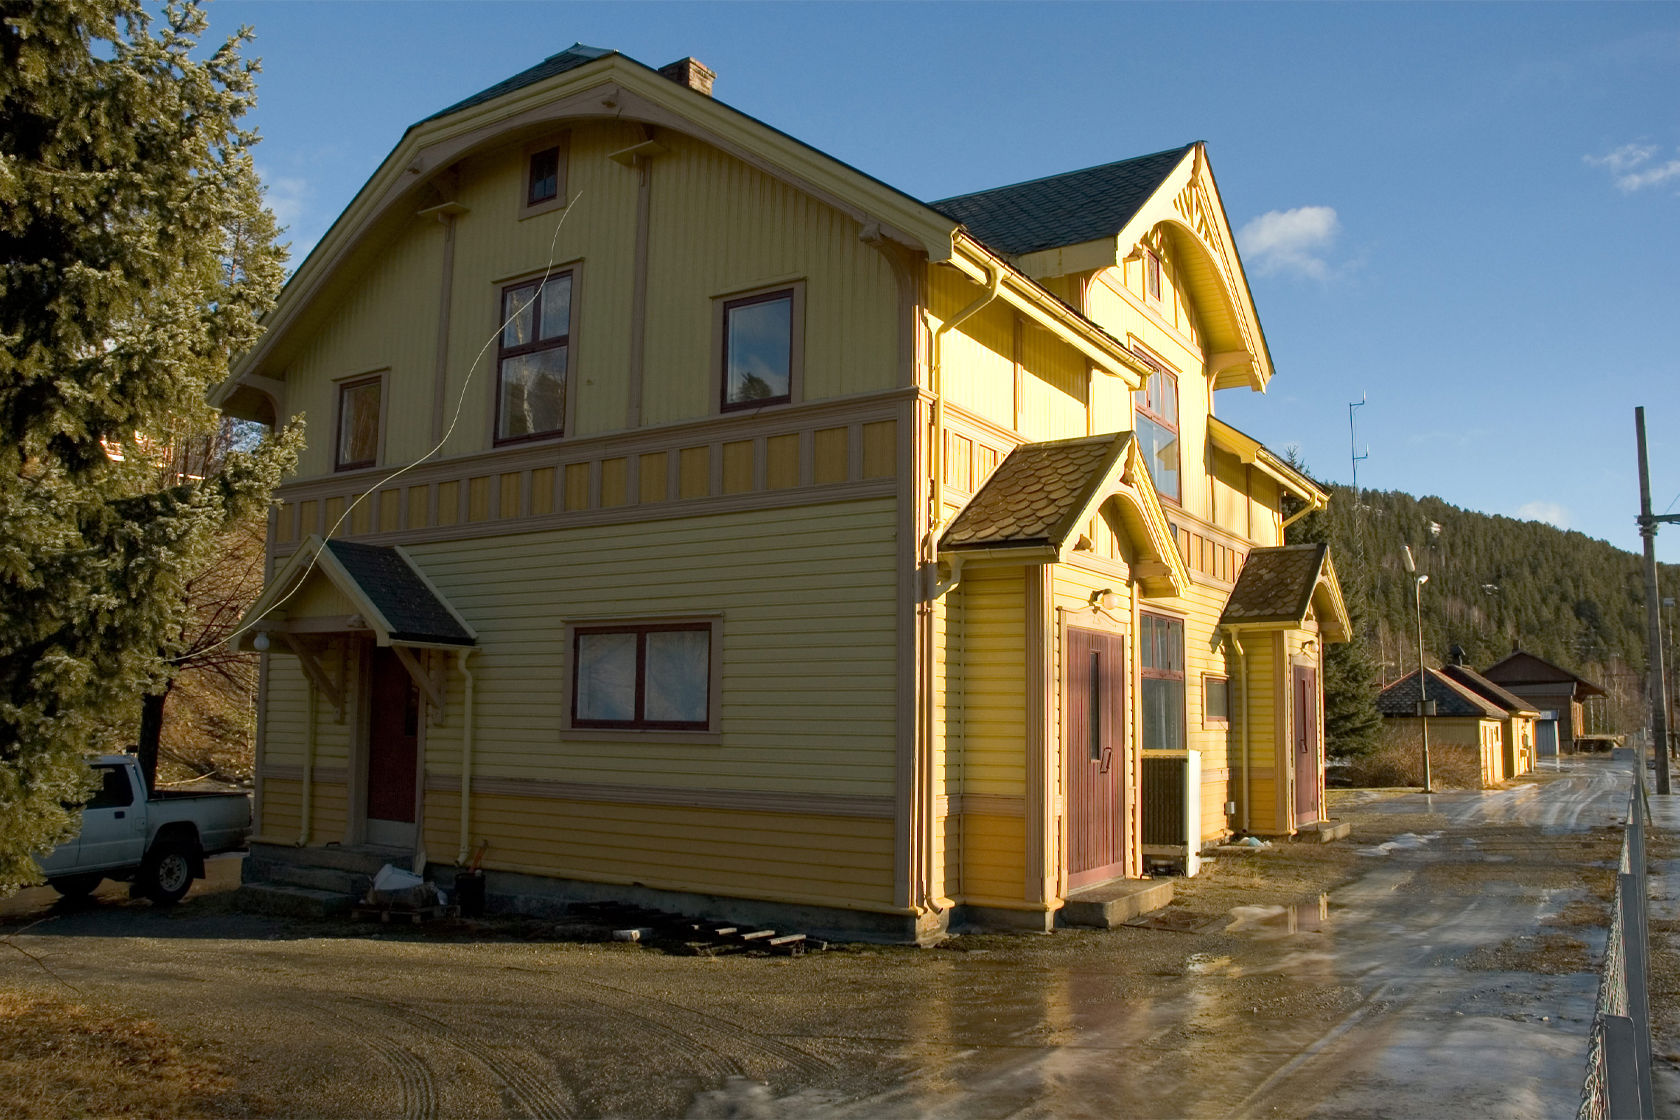 Station building and platform at Gulsvik station